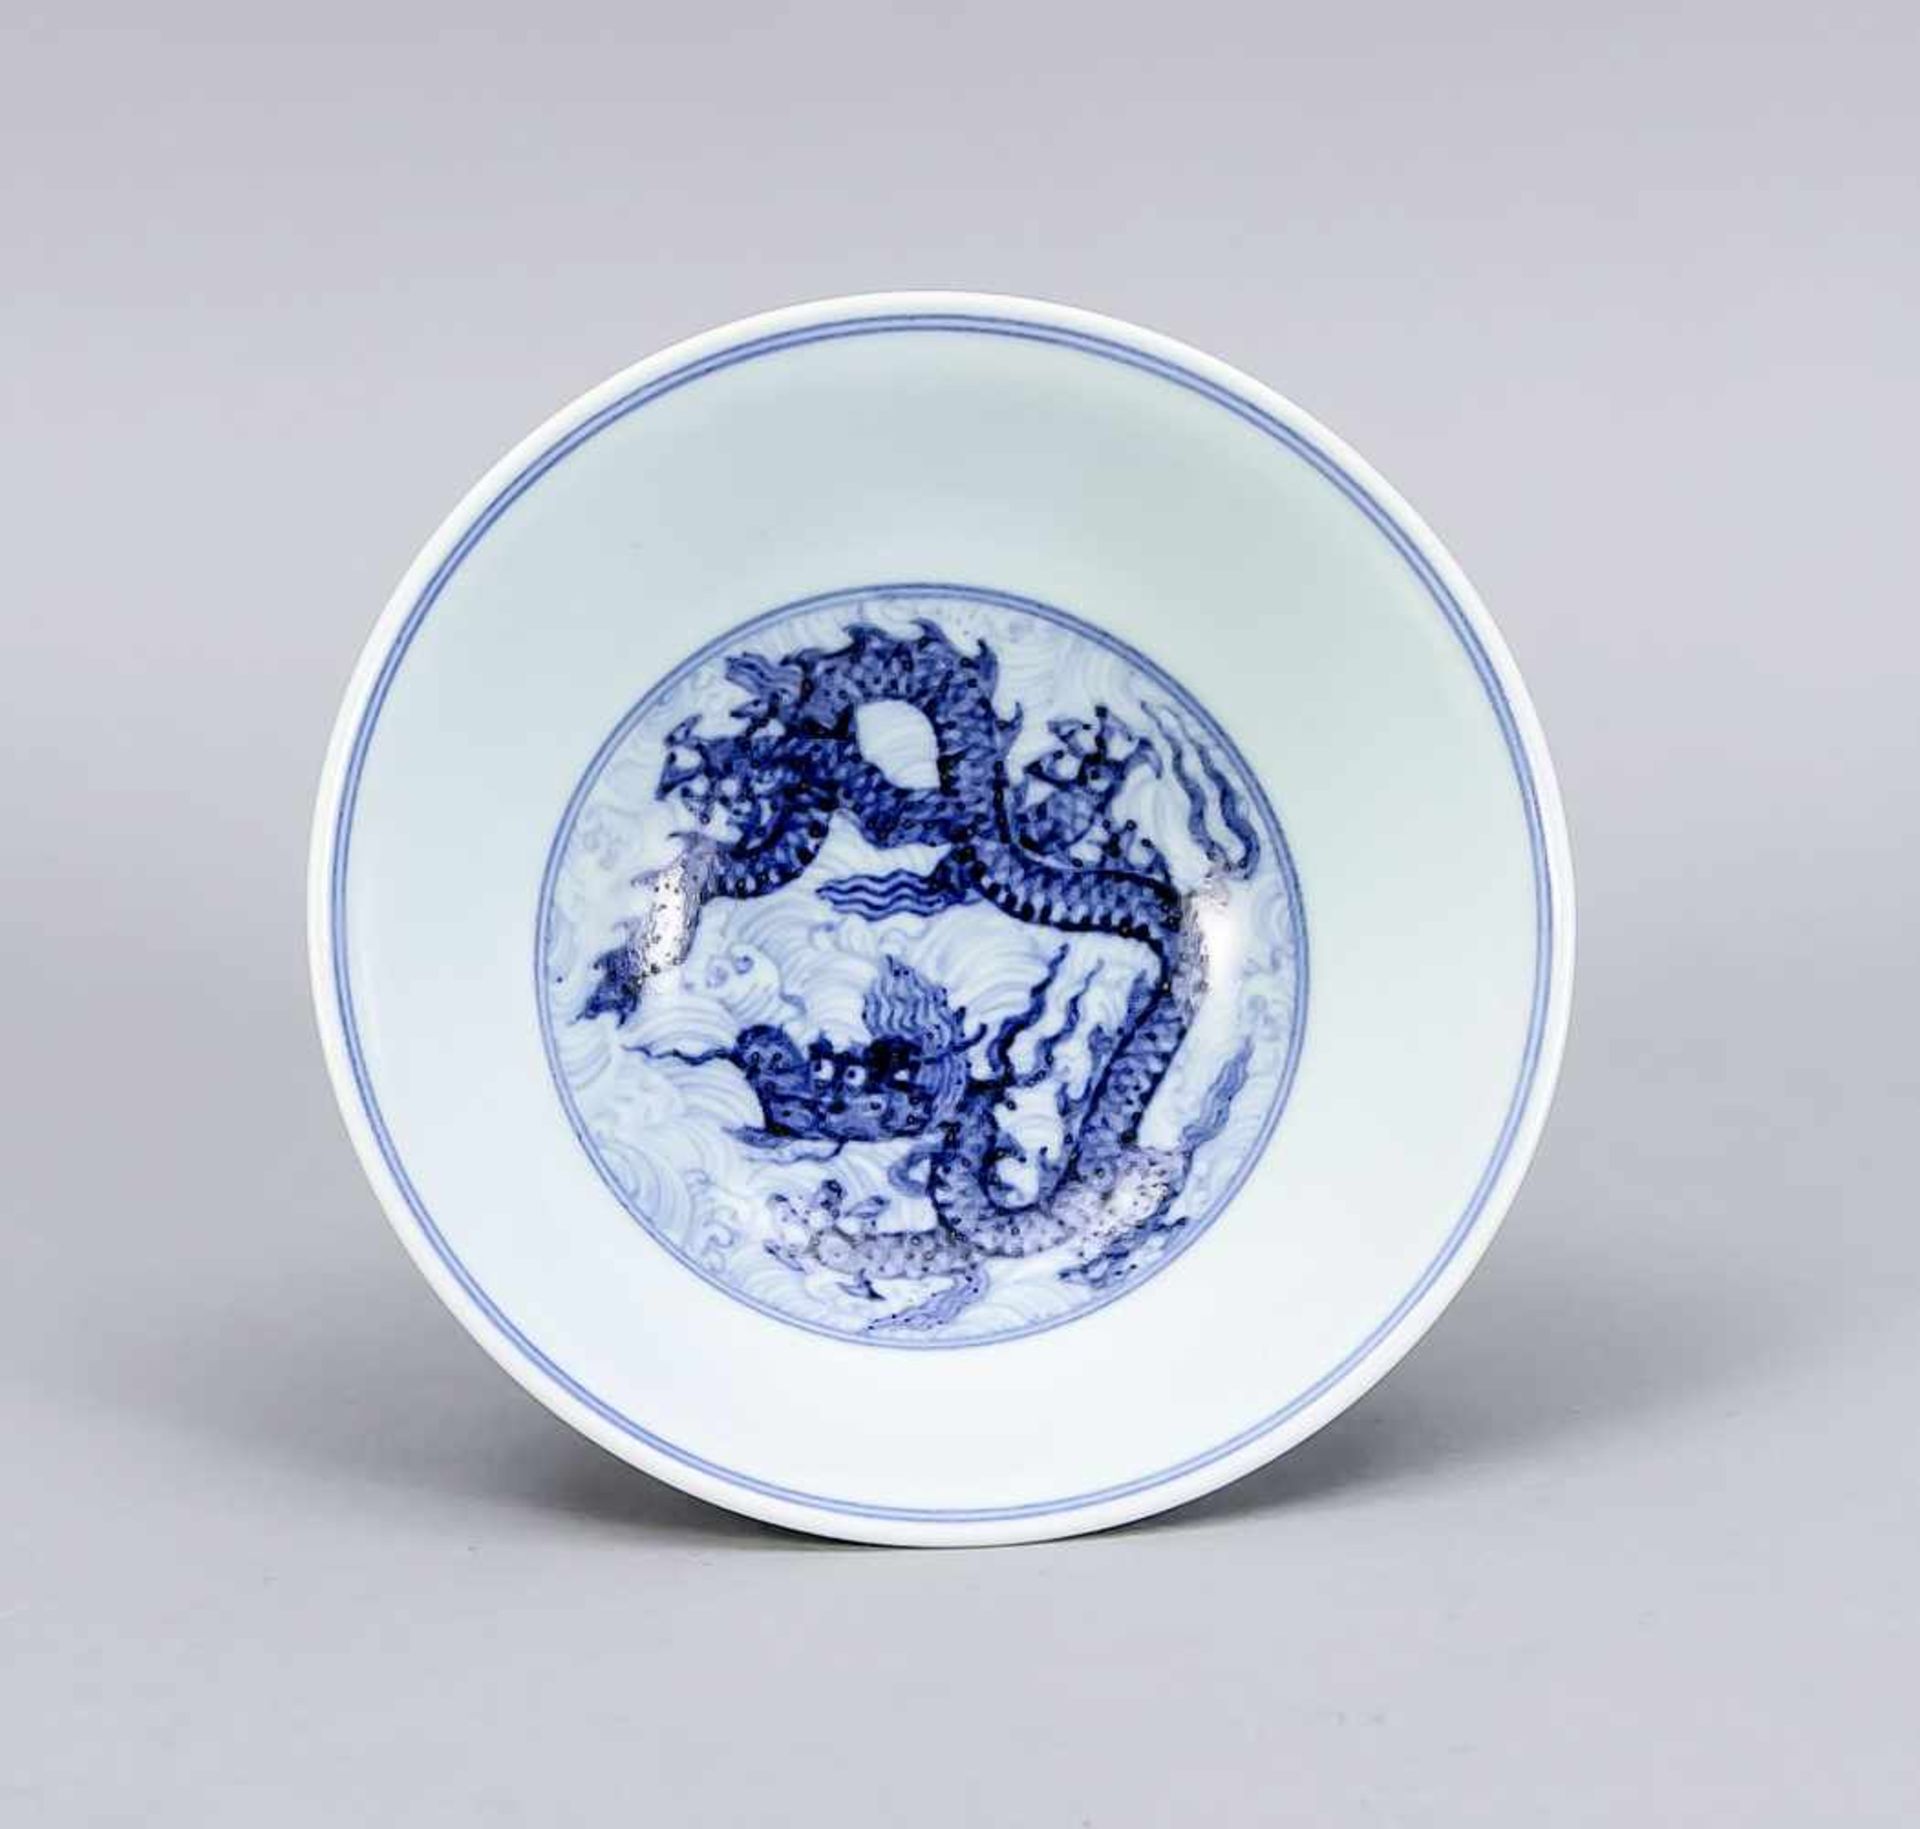 Drachen-Fußschale, China, 19. Jh.? Dekor in Kobaltblau, im Spiegel mit einem Drachen vorstilisierten - Bild 2 aus 3